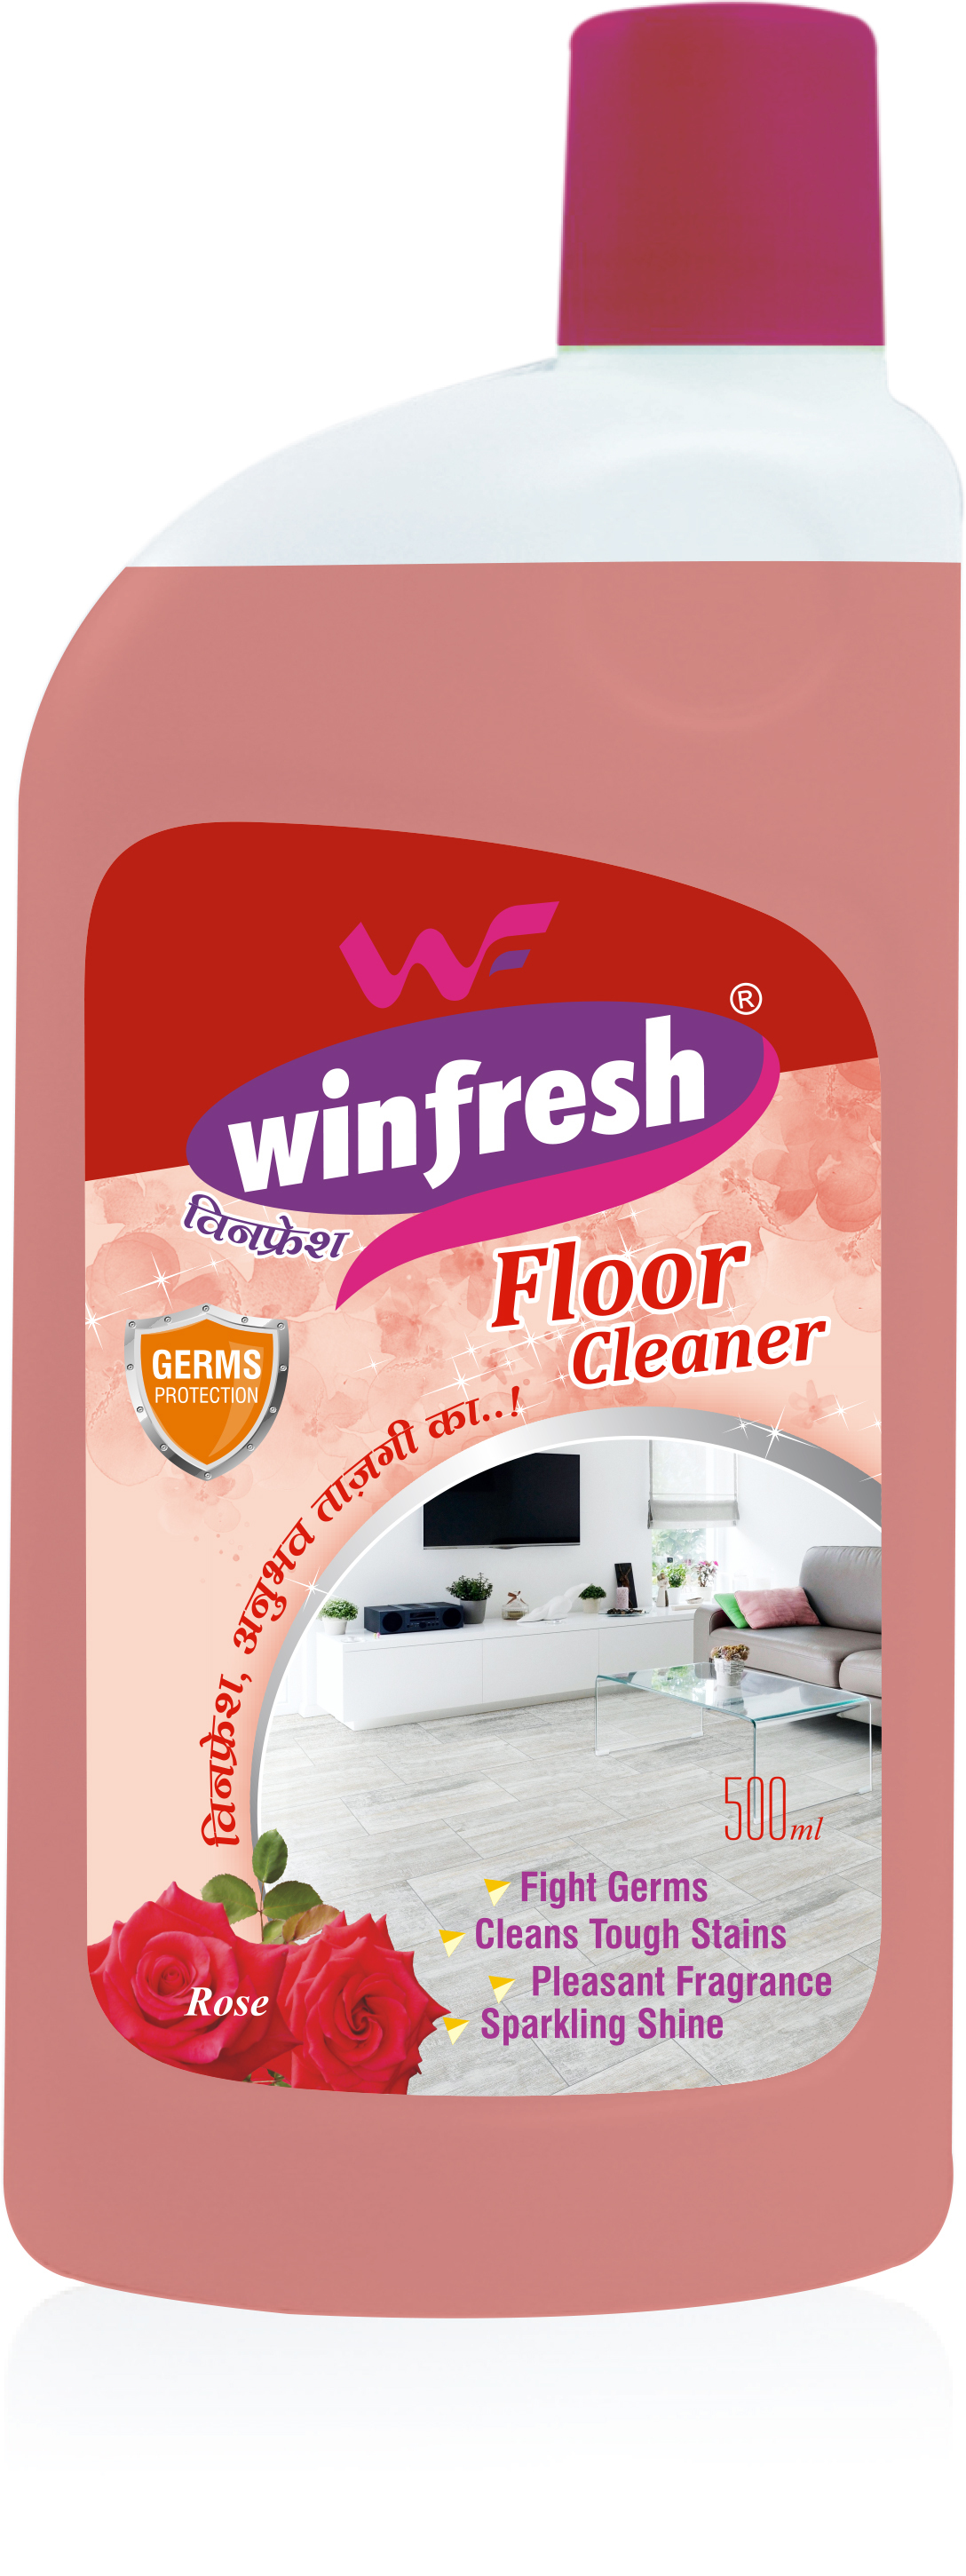 Winfresh Floor Cleaner